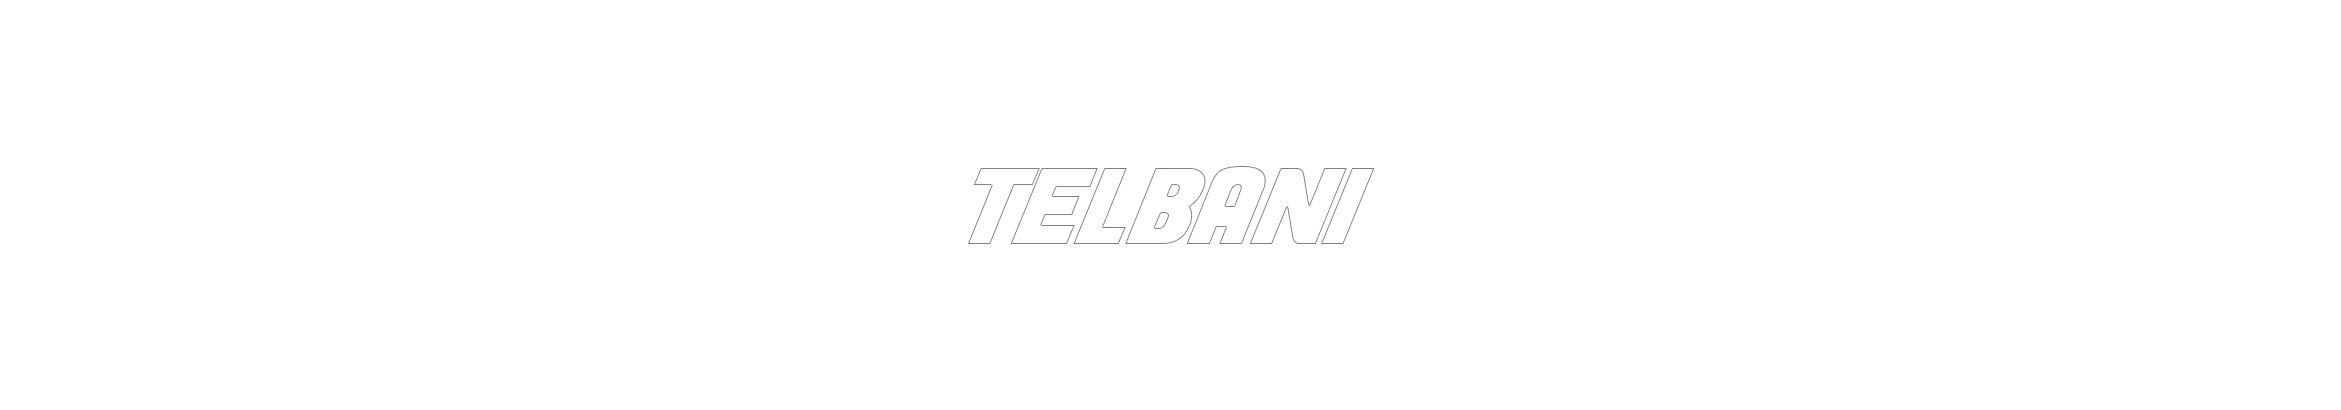 Mohamed Telbani's profile banner